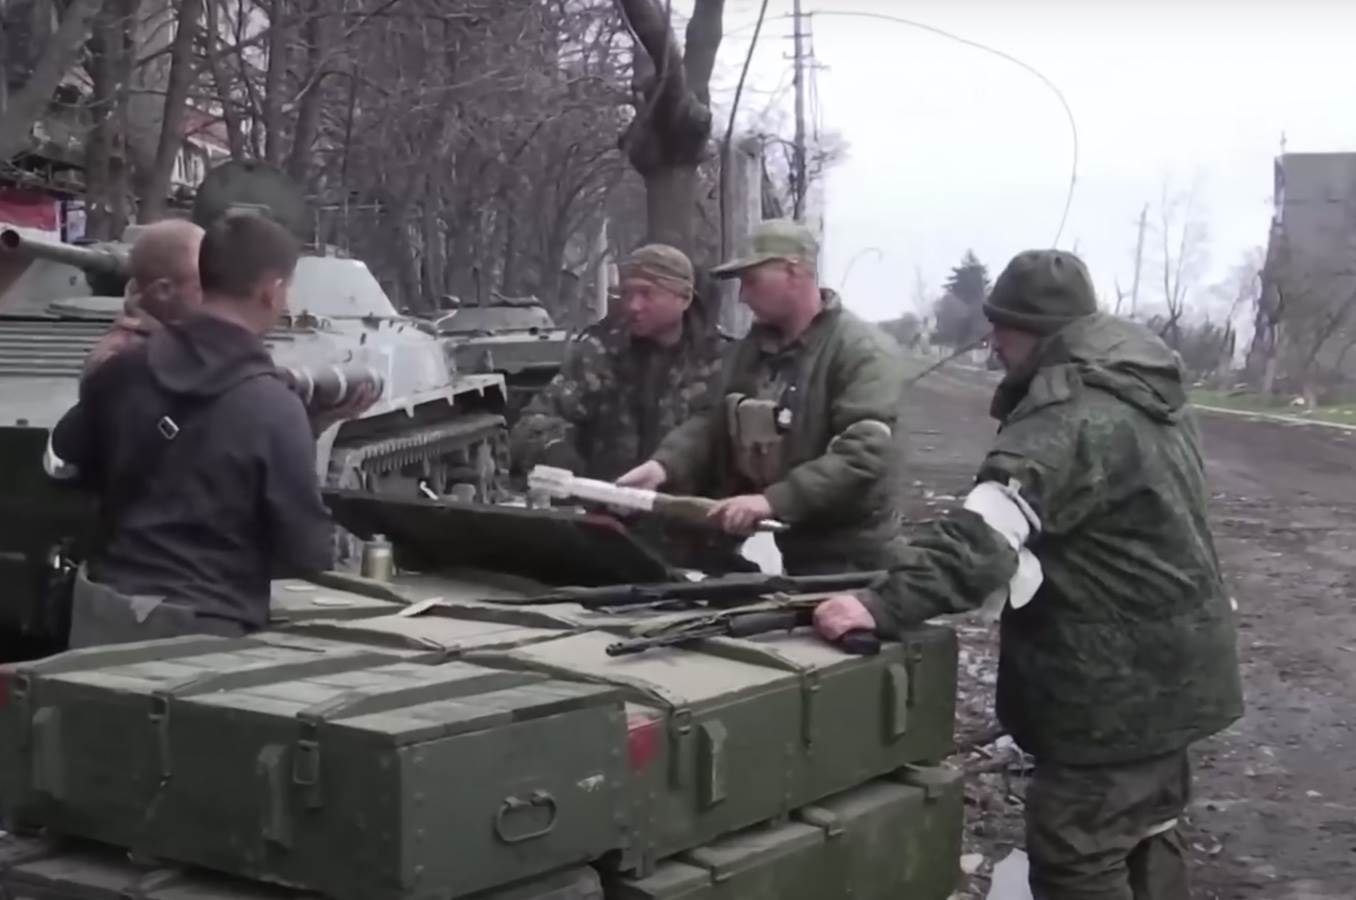  Rusija spremna da dozvoli borcima da napuste čeličanu u Marijupolju 